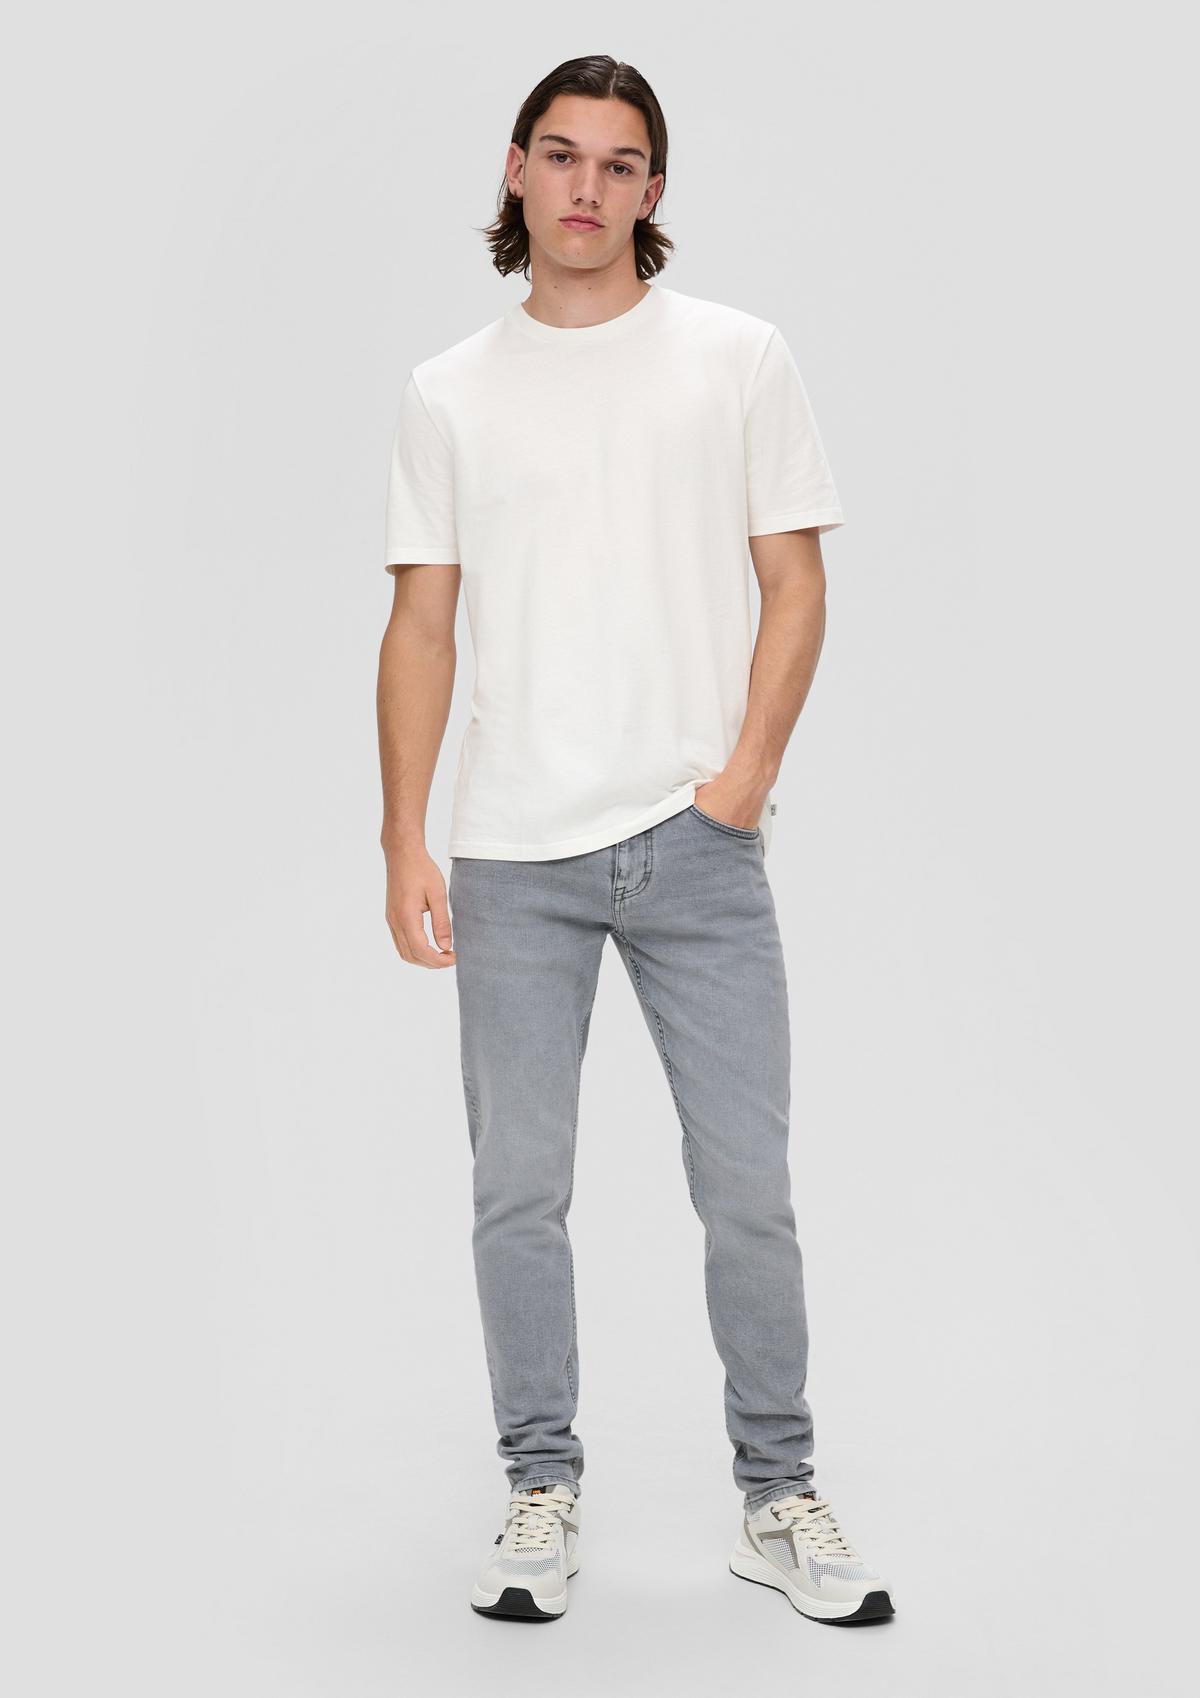 Jeans hlače Shawn / kroj Regular Fit / Mid Rise / Tapered Leg